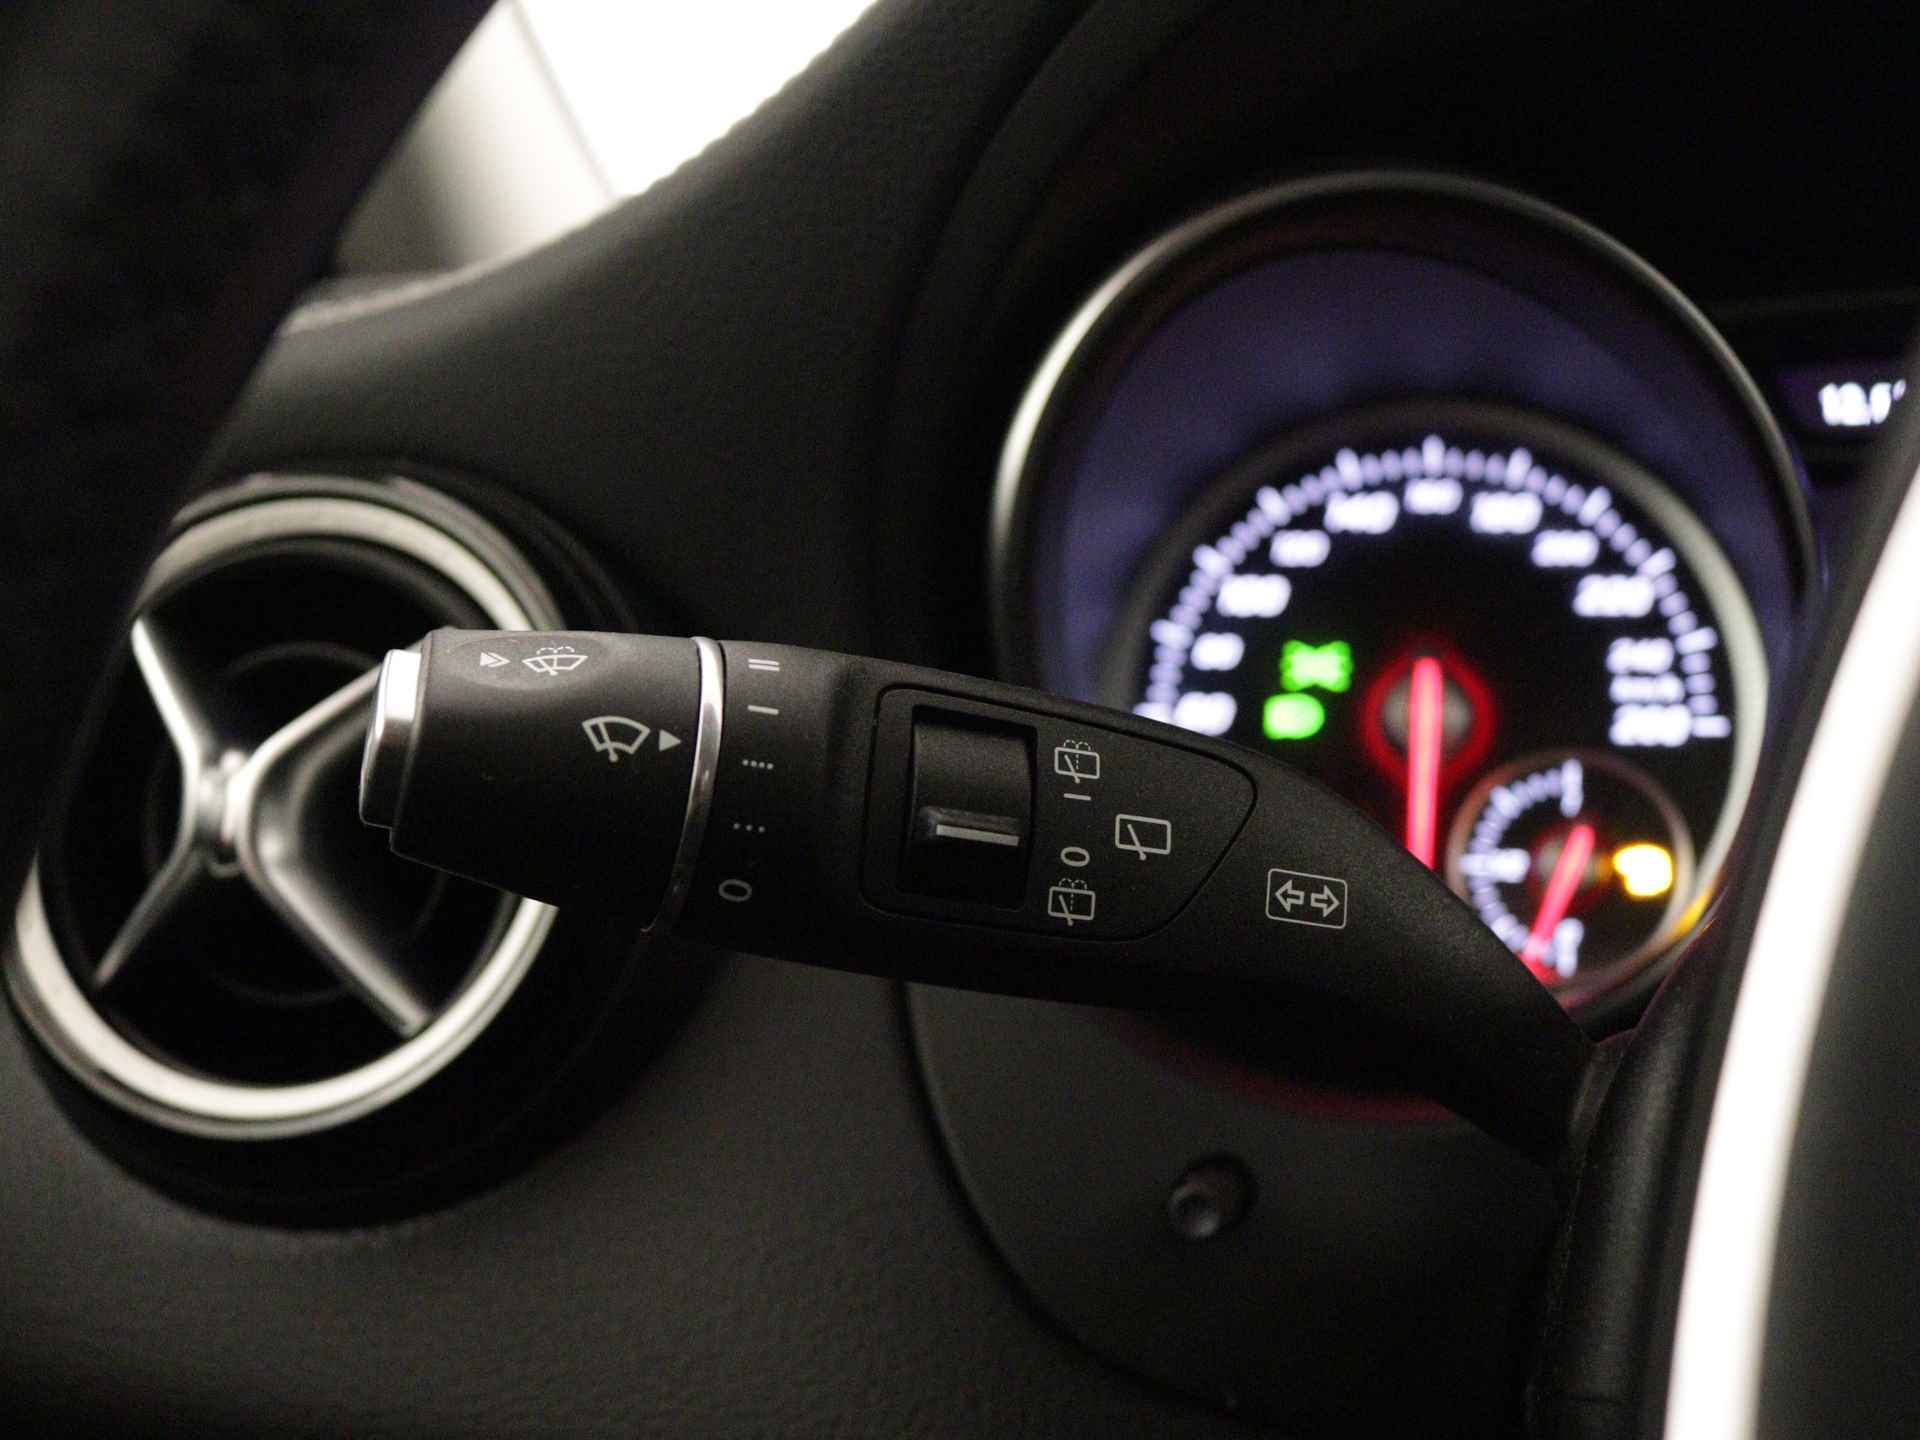 Mercedes-Benz GLA 200 AMG Premium Plus Limited | Multispaaks lichtmetalen velgen | Treeplanken | Navigatie | Parking support | Leder bekleding | inclusief 24 maanden MB Certified garantie voor europa - 19/39